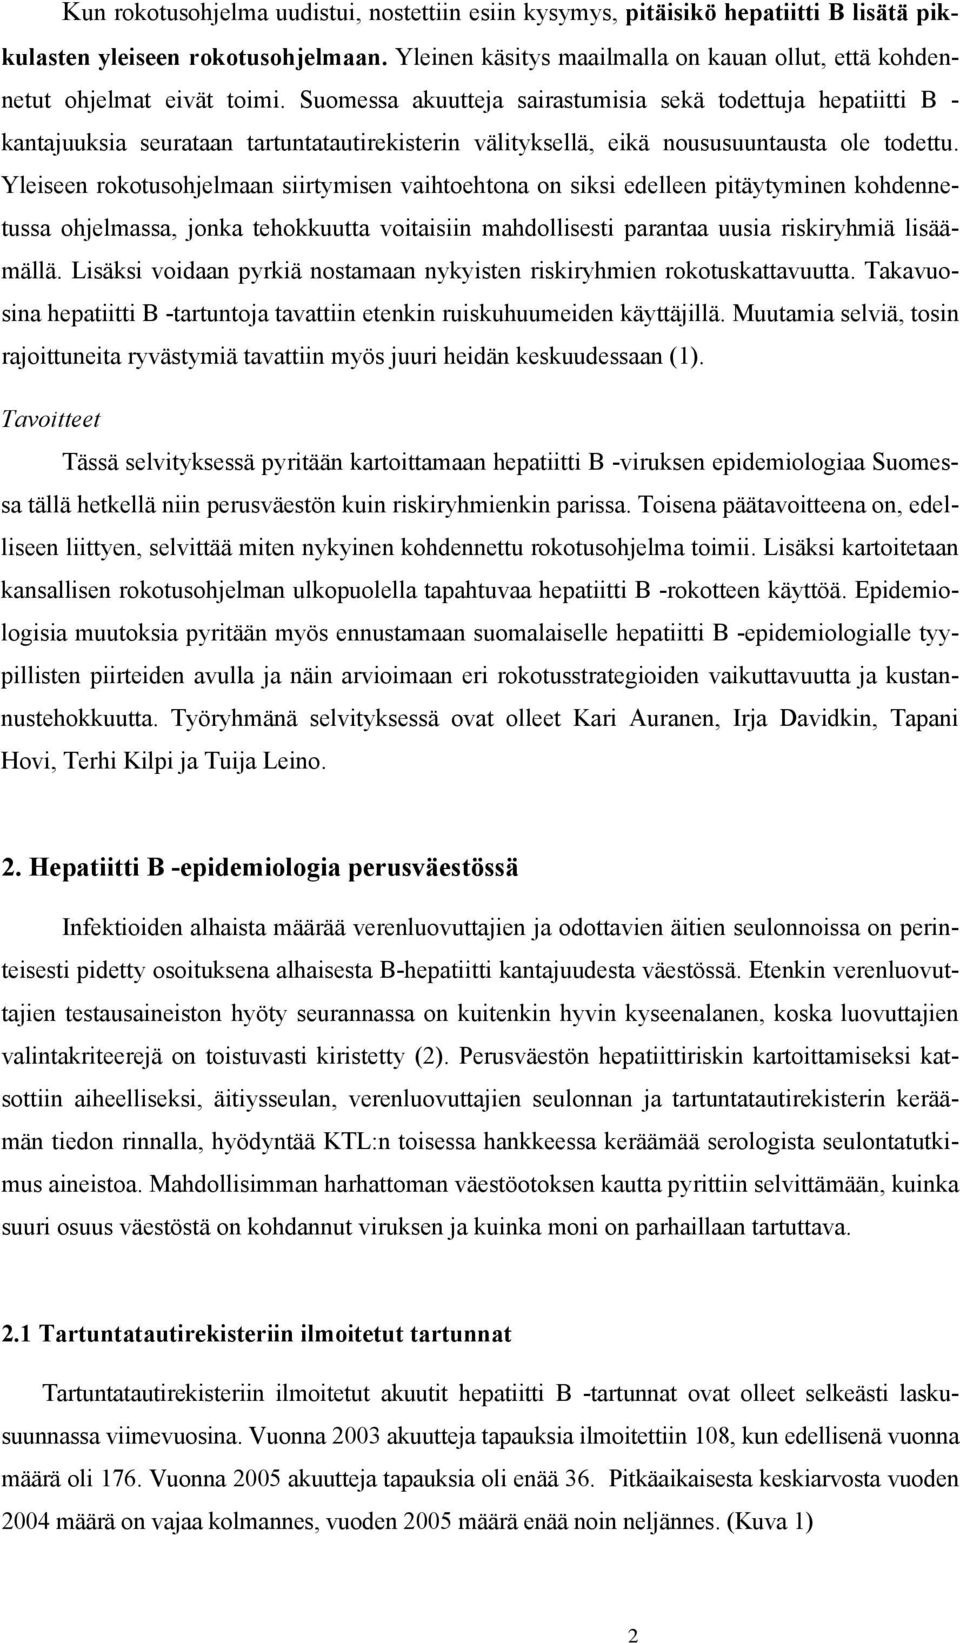 Suomessa akuutteja sairastumisia sekä todettuja hepatiitti B - kantajuuksia seurataan tartuntatautirekisterin välityksellä, eikä noususuuntausta ole todettu.